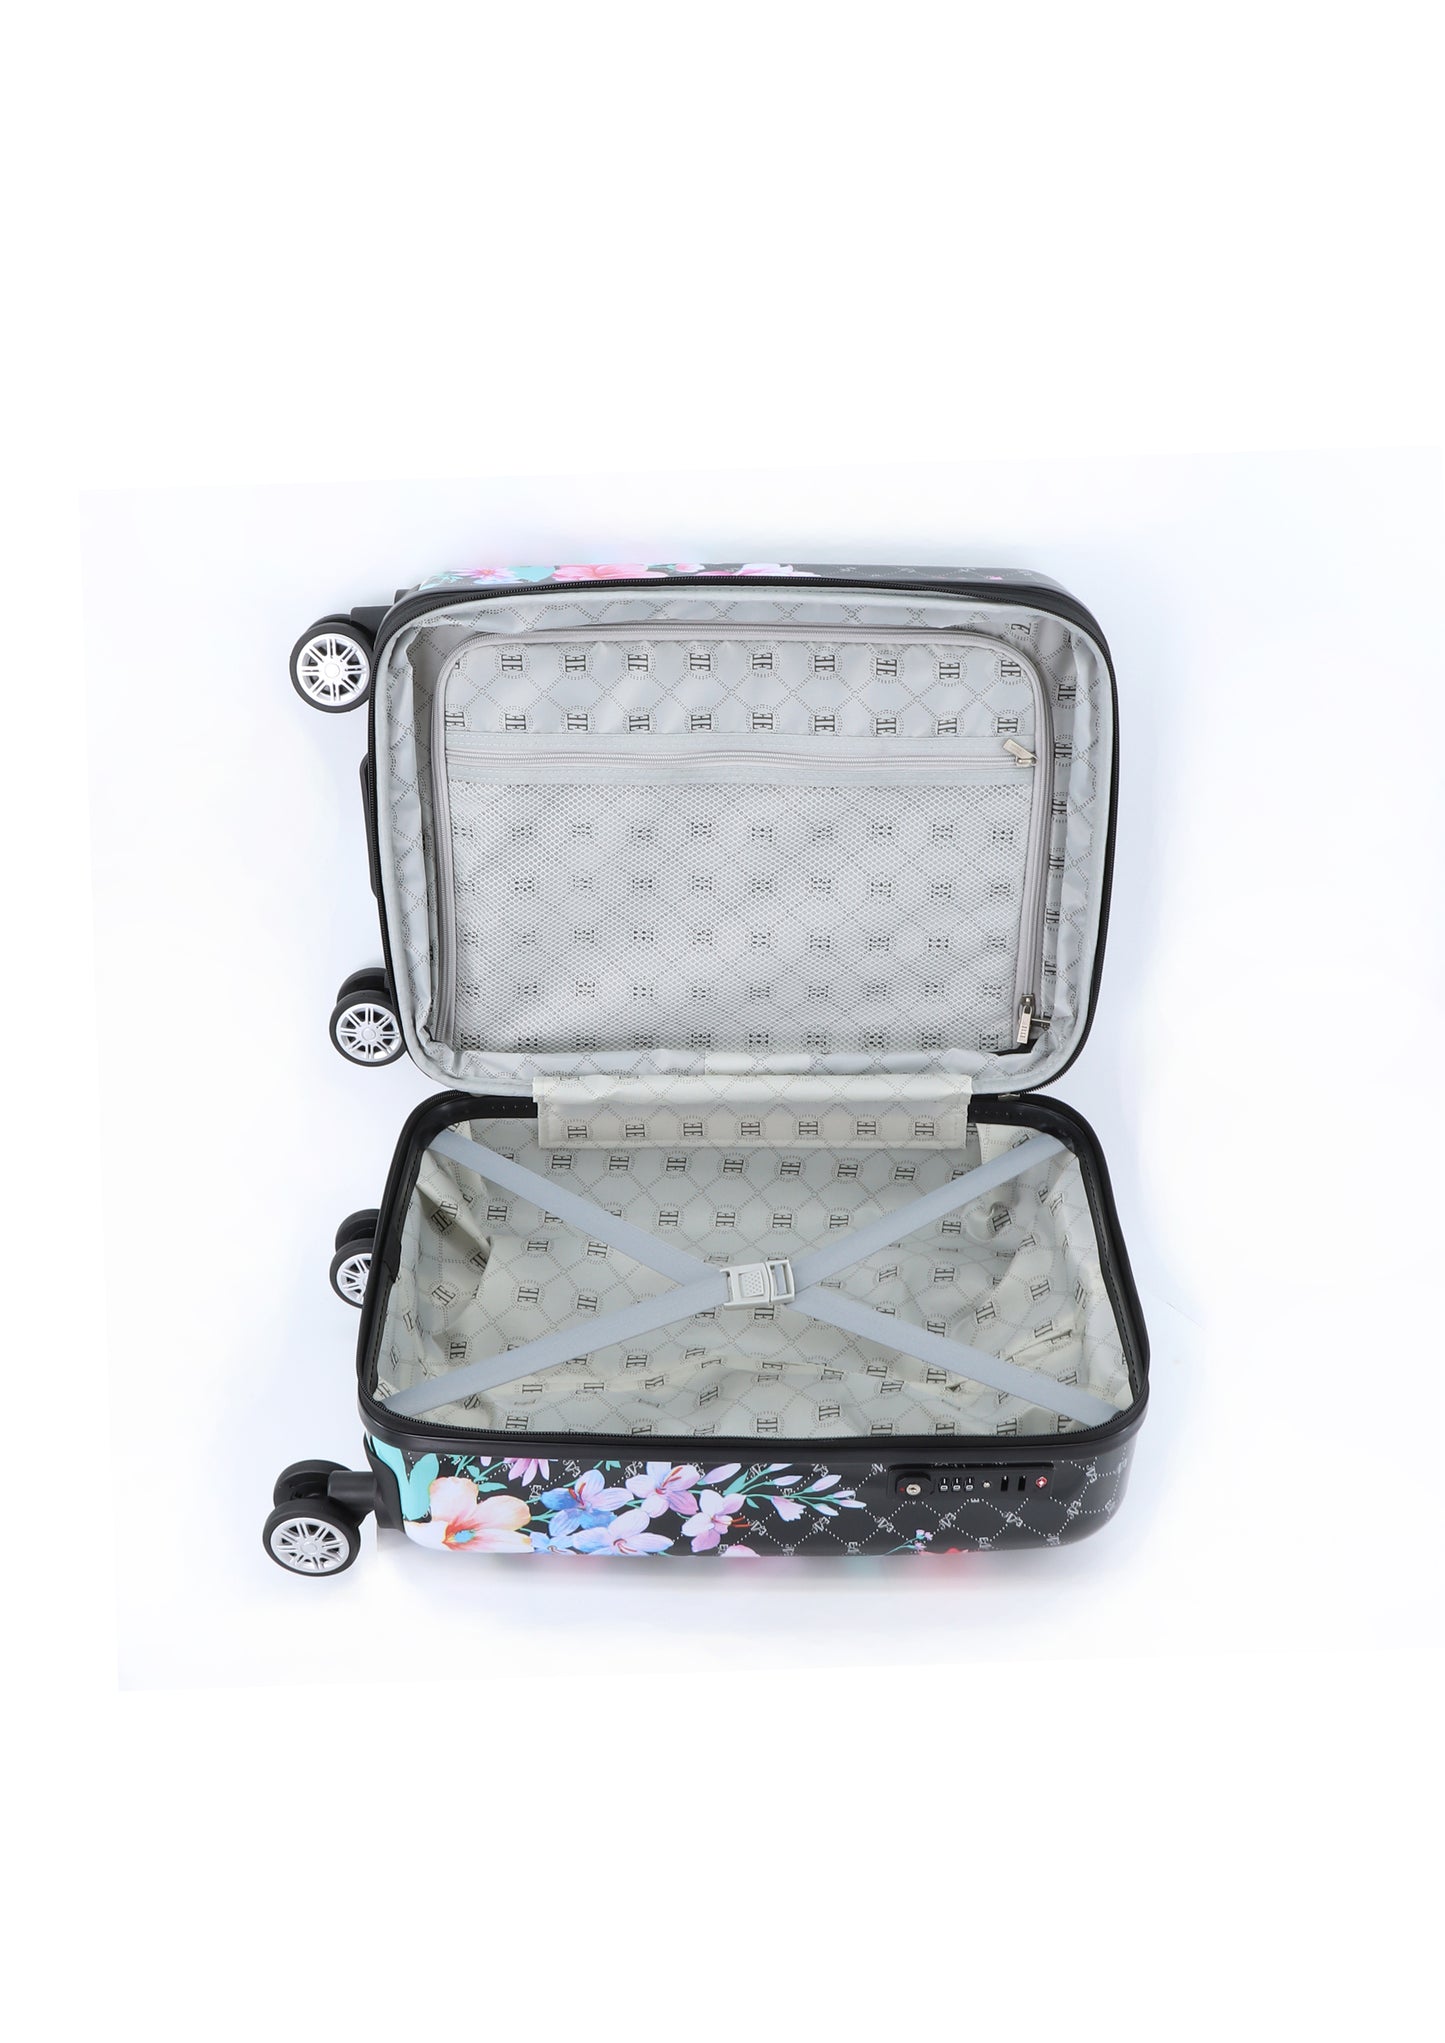 Valise rigide pour bagage à main ELLE / Trolley / Valise de voyage - 55x35x25 cm - Bouquet - Noir